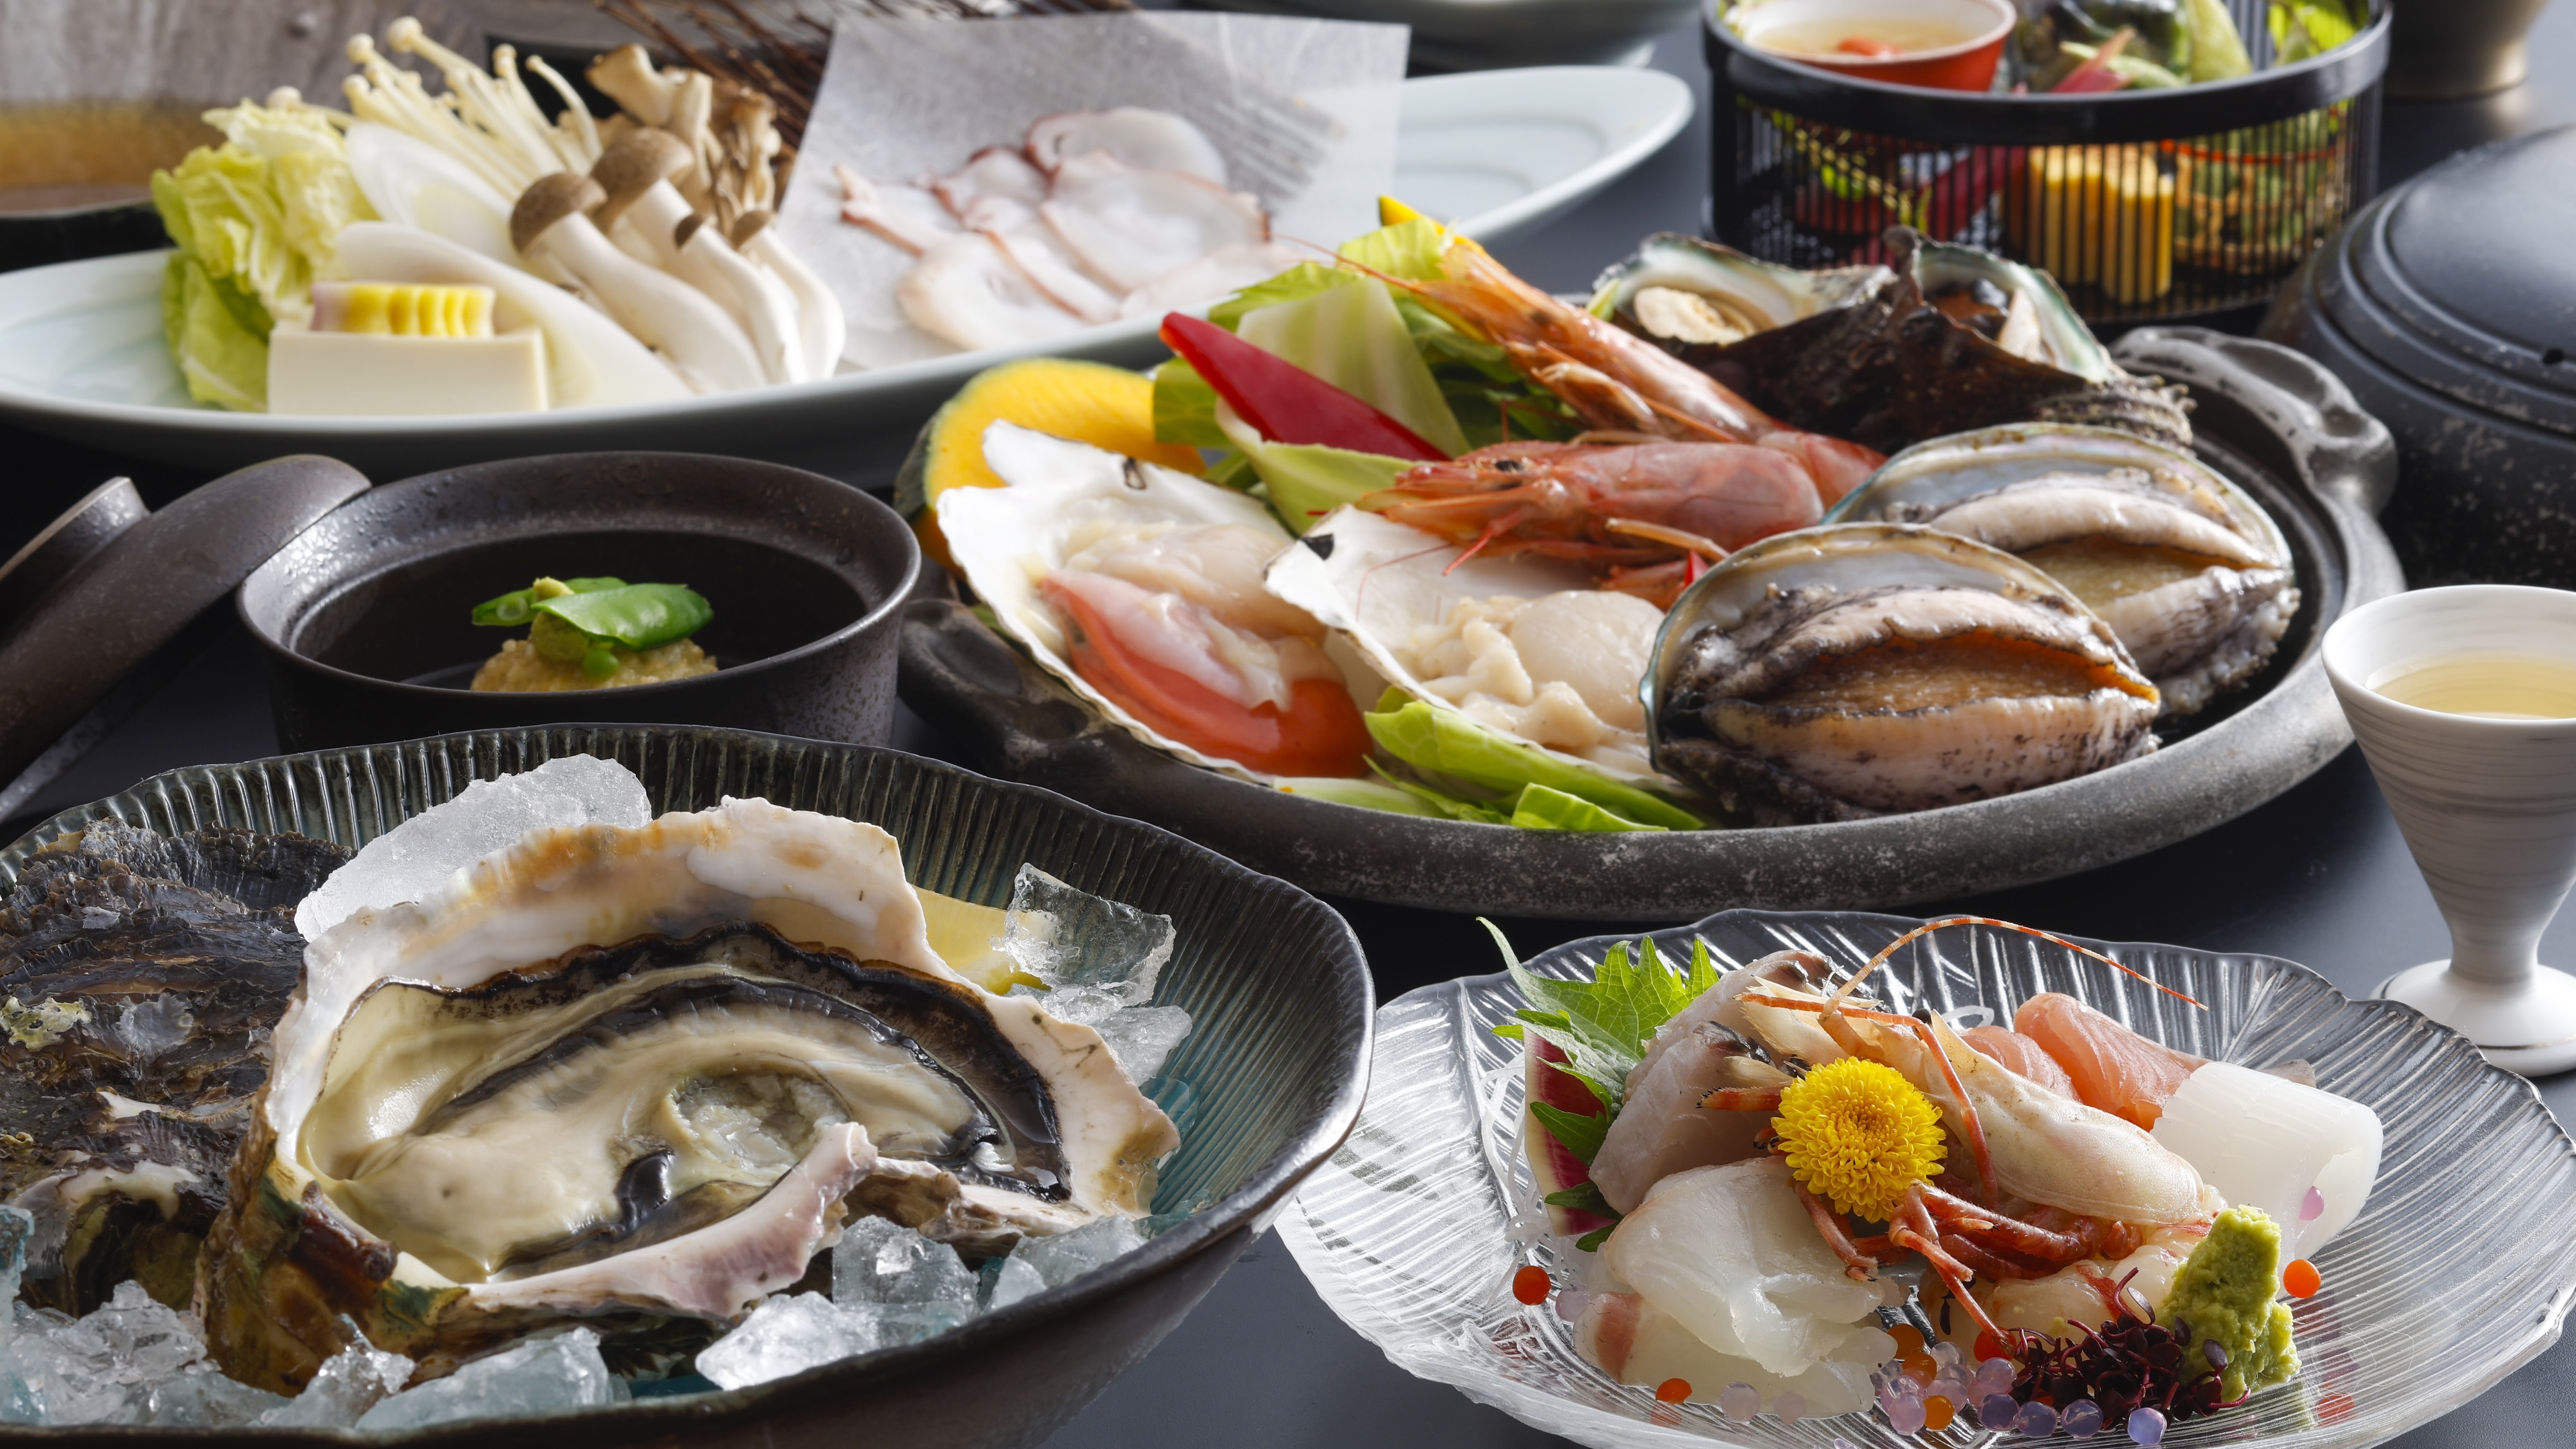 [ฤดูร้อน/อาหารทะเล นางิสะไคเซกิ] เพลิดเพลินไปกับฤดูร้อน◆ ลิ้มรสอาหารพิเศษของซาตาเกะ อาหารทะเลย่างบนจานเซรามิก และรสชาติฤดูร้อนของ "หอยนางรมหิน" และ "ชาบูปลาหมึกยักษ์"!